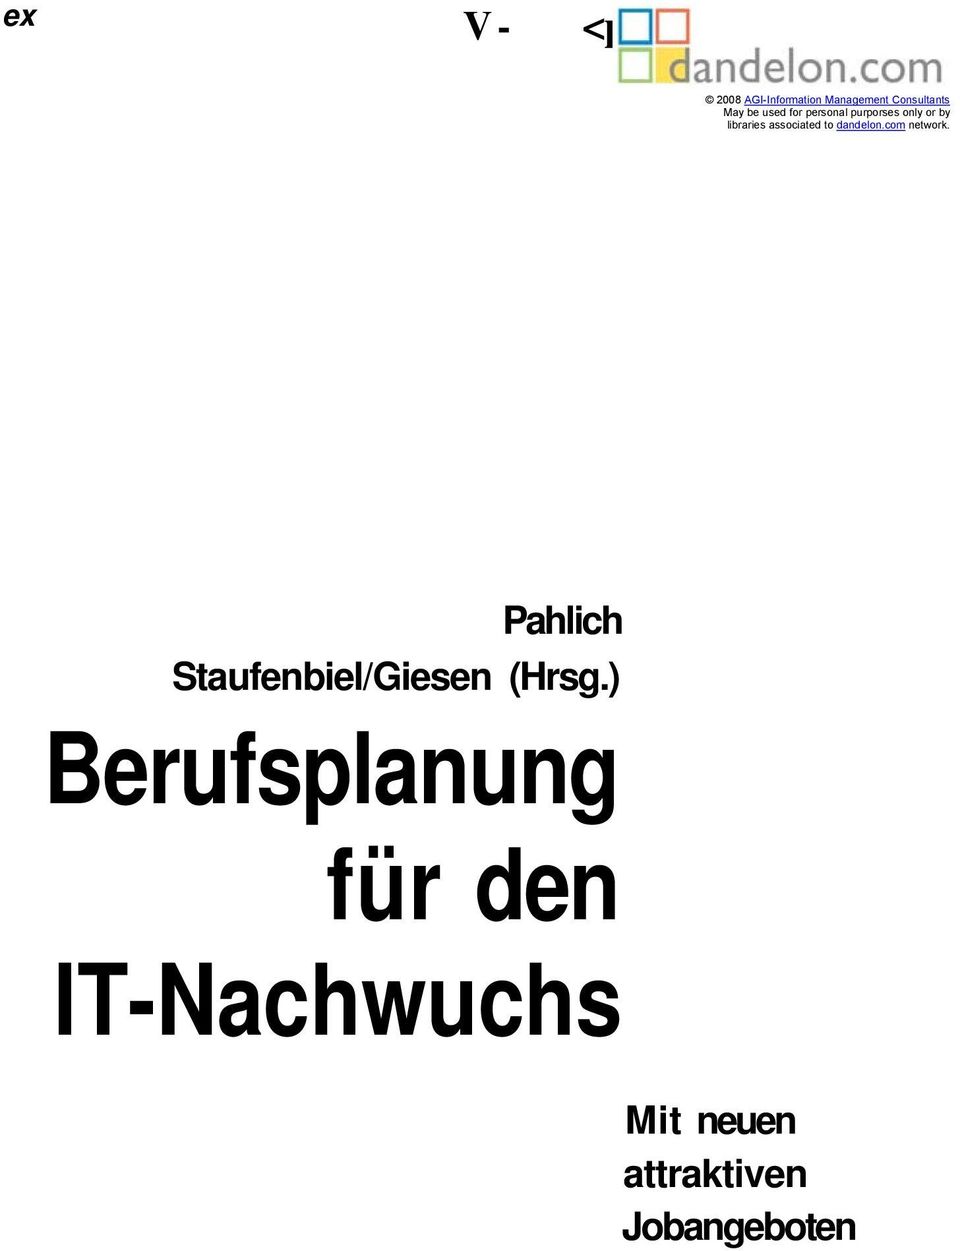 dandelon.com network. Pahlich Staufenbiel/Giesen (Hrsg.